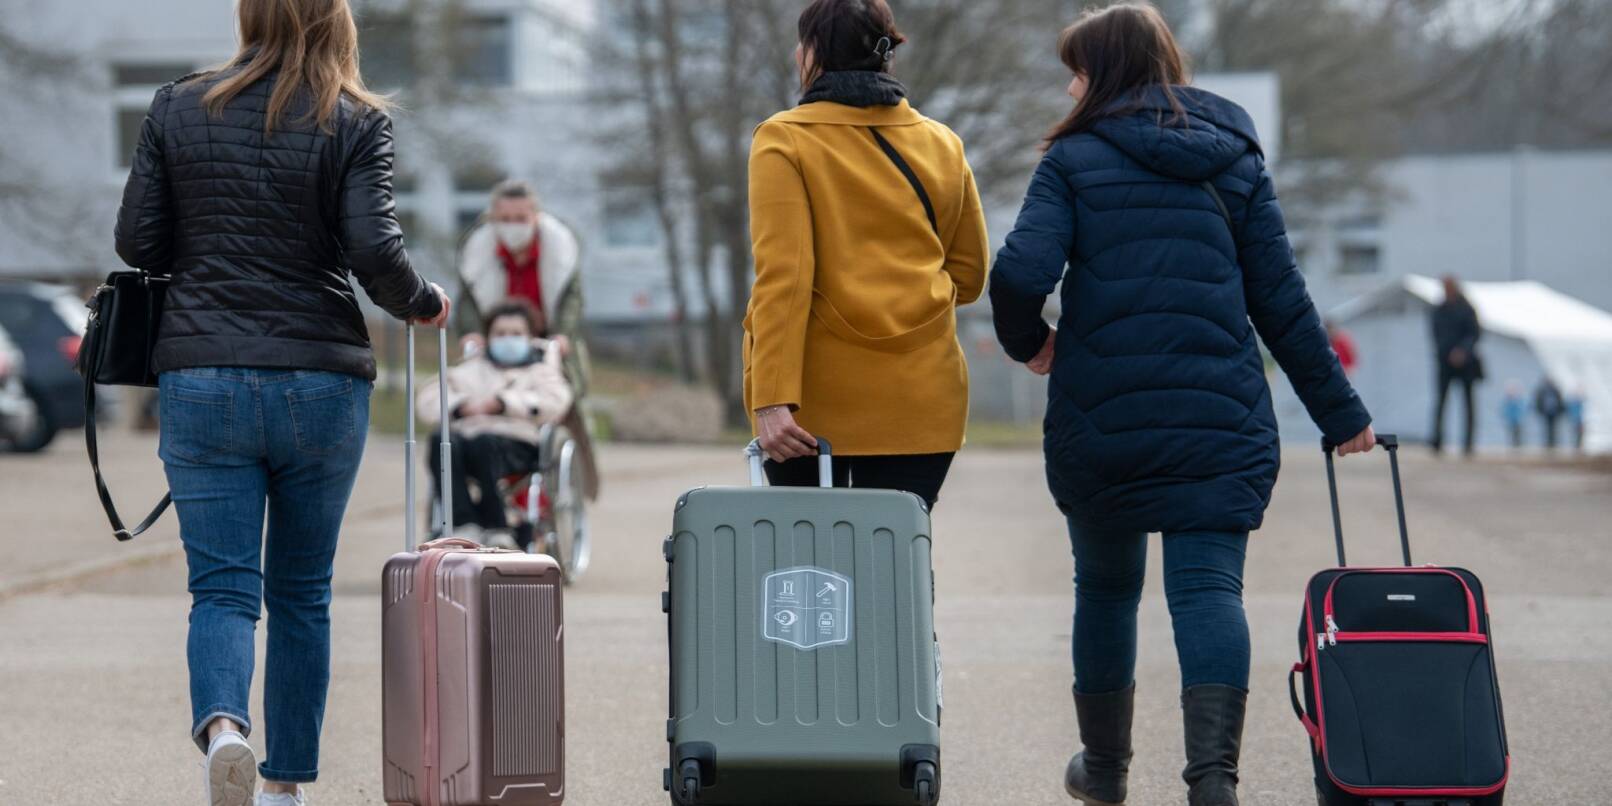 Flüchtlinge aus der Ukraine finden in Deutschland über die sogenannte Massenzustrom-Richtline Aufnahme.